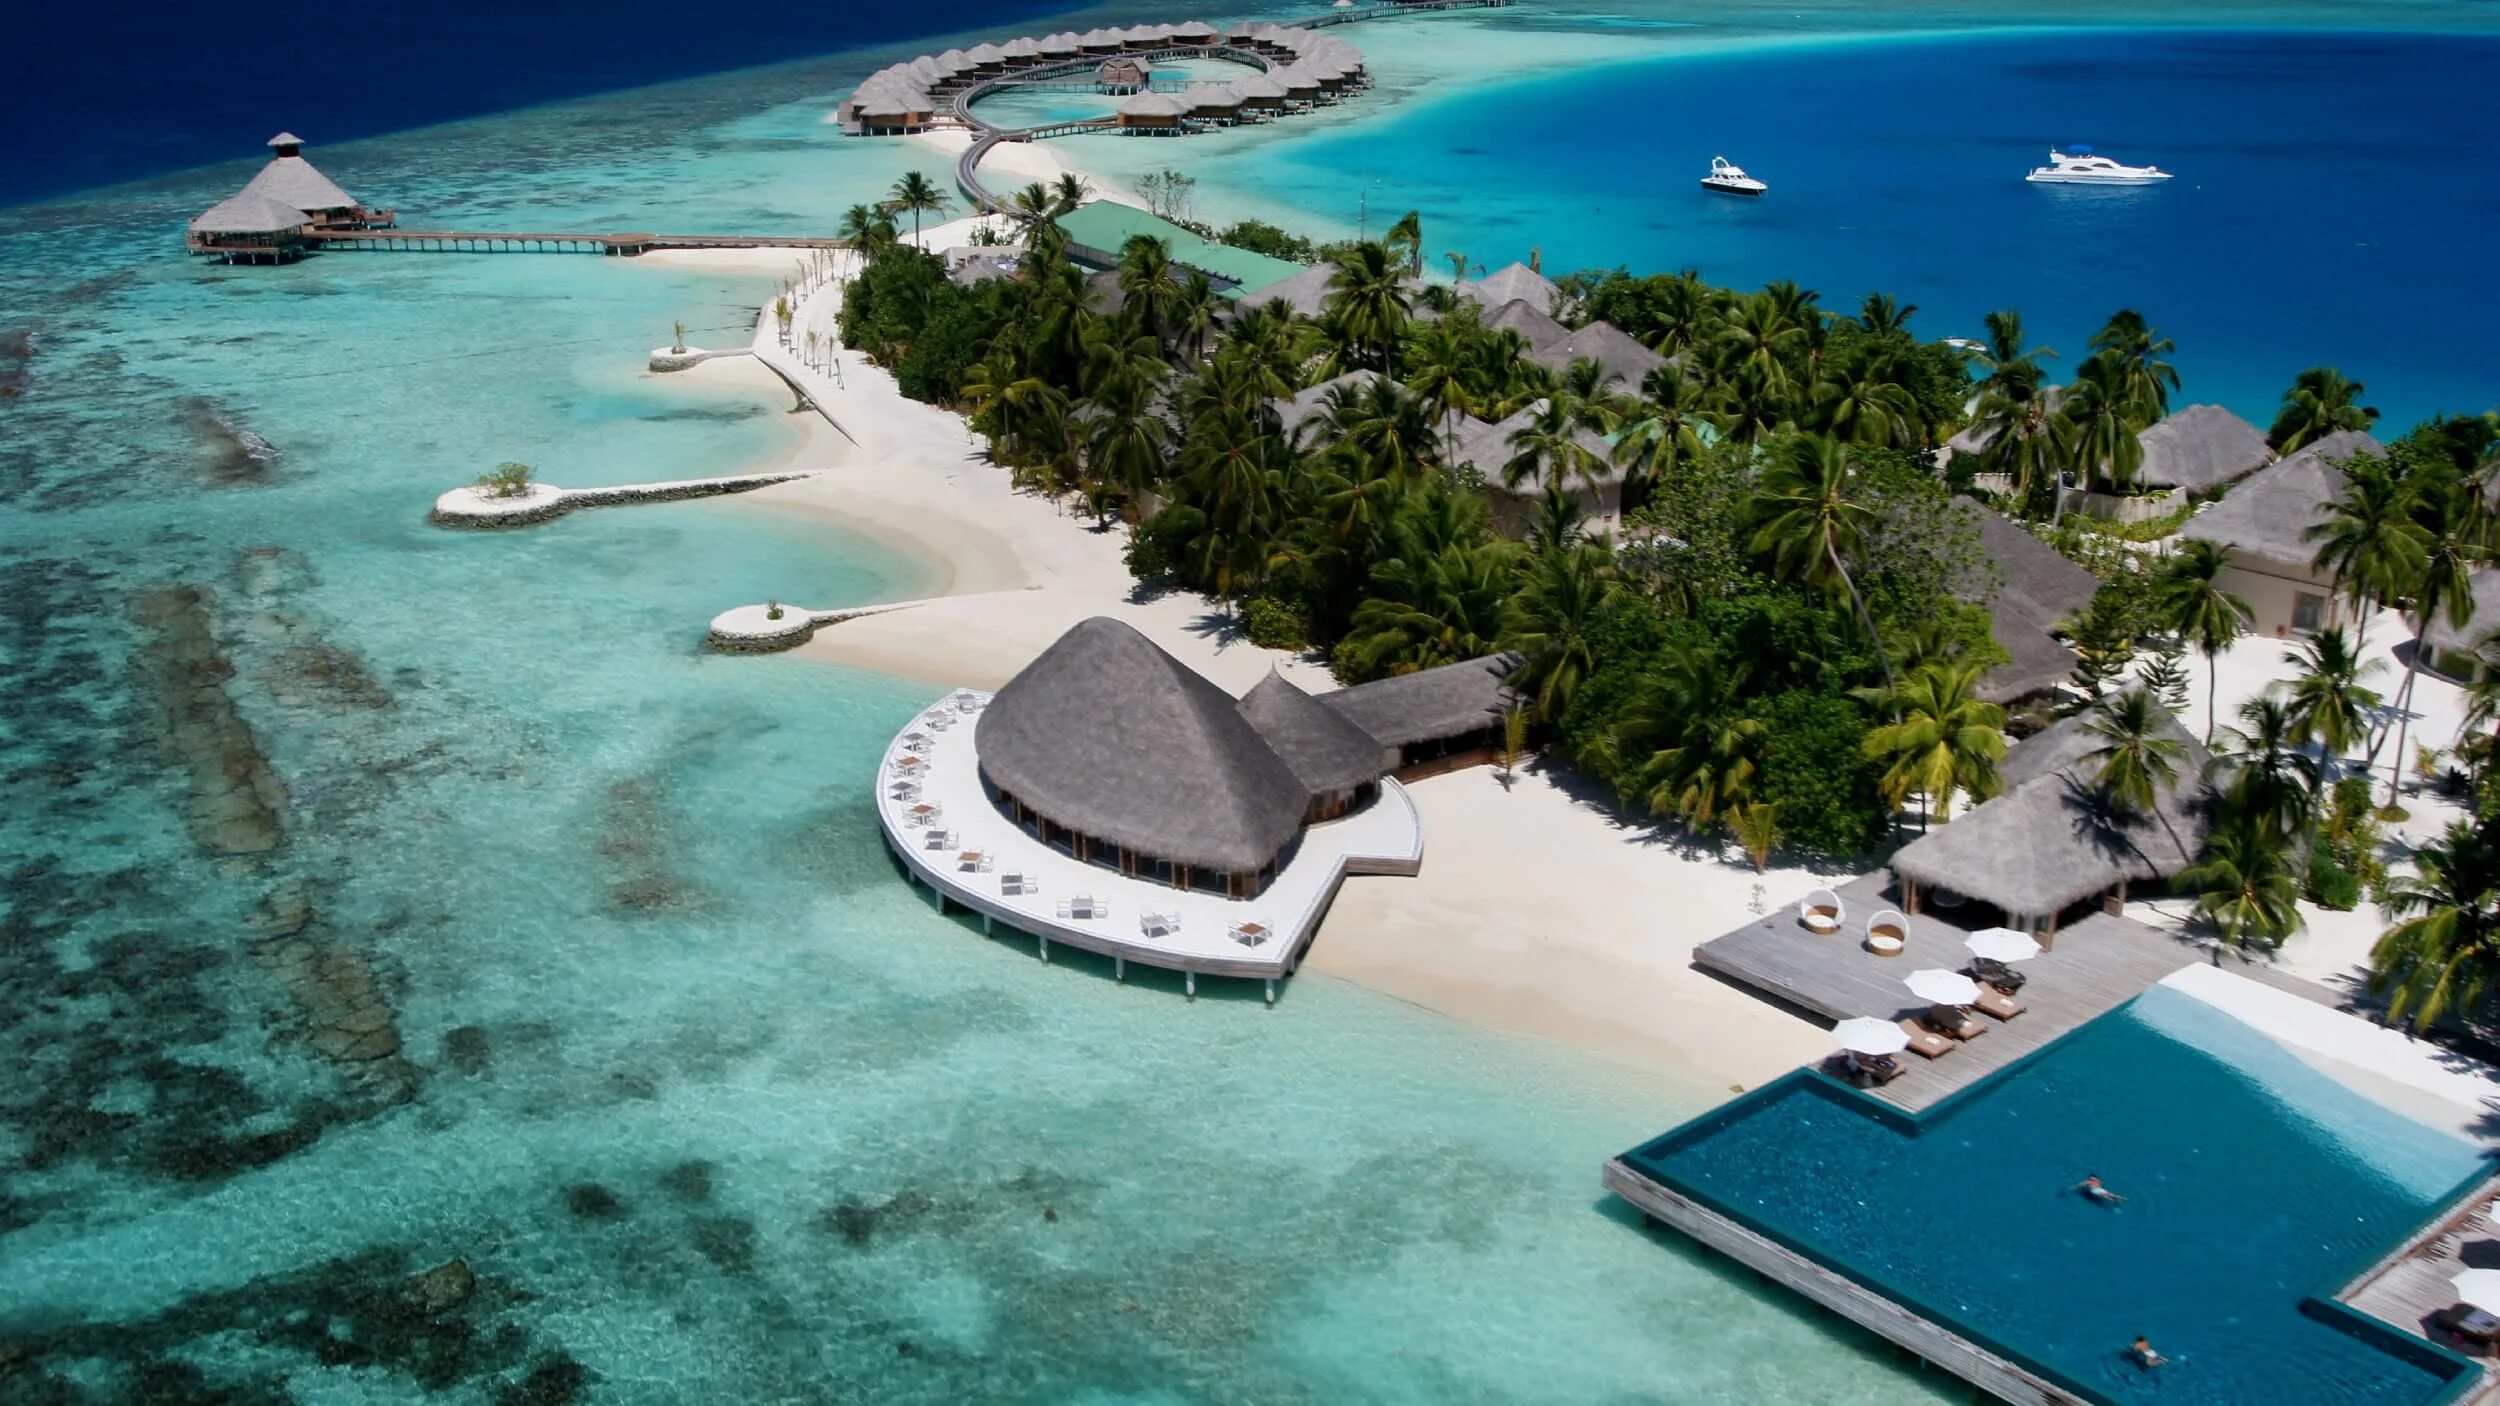 Лааму Атолл Мальдивы. Остров Барос Мальдивы. Мальдивы Хитхадху. Мативери Мальдивы. В какой стране находится известный курорт спа